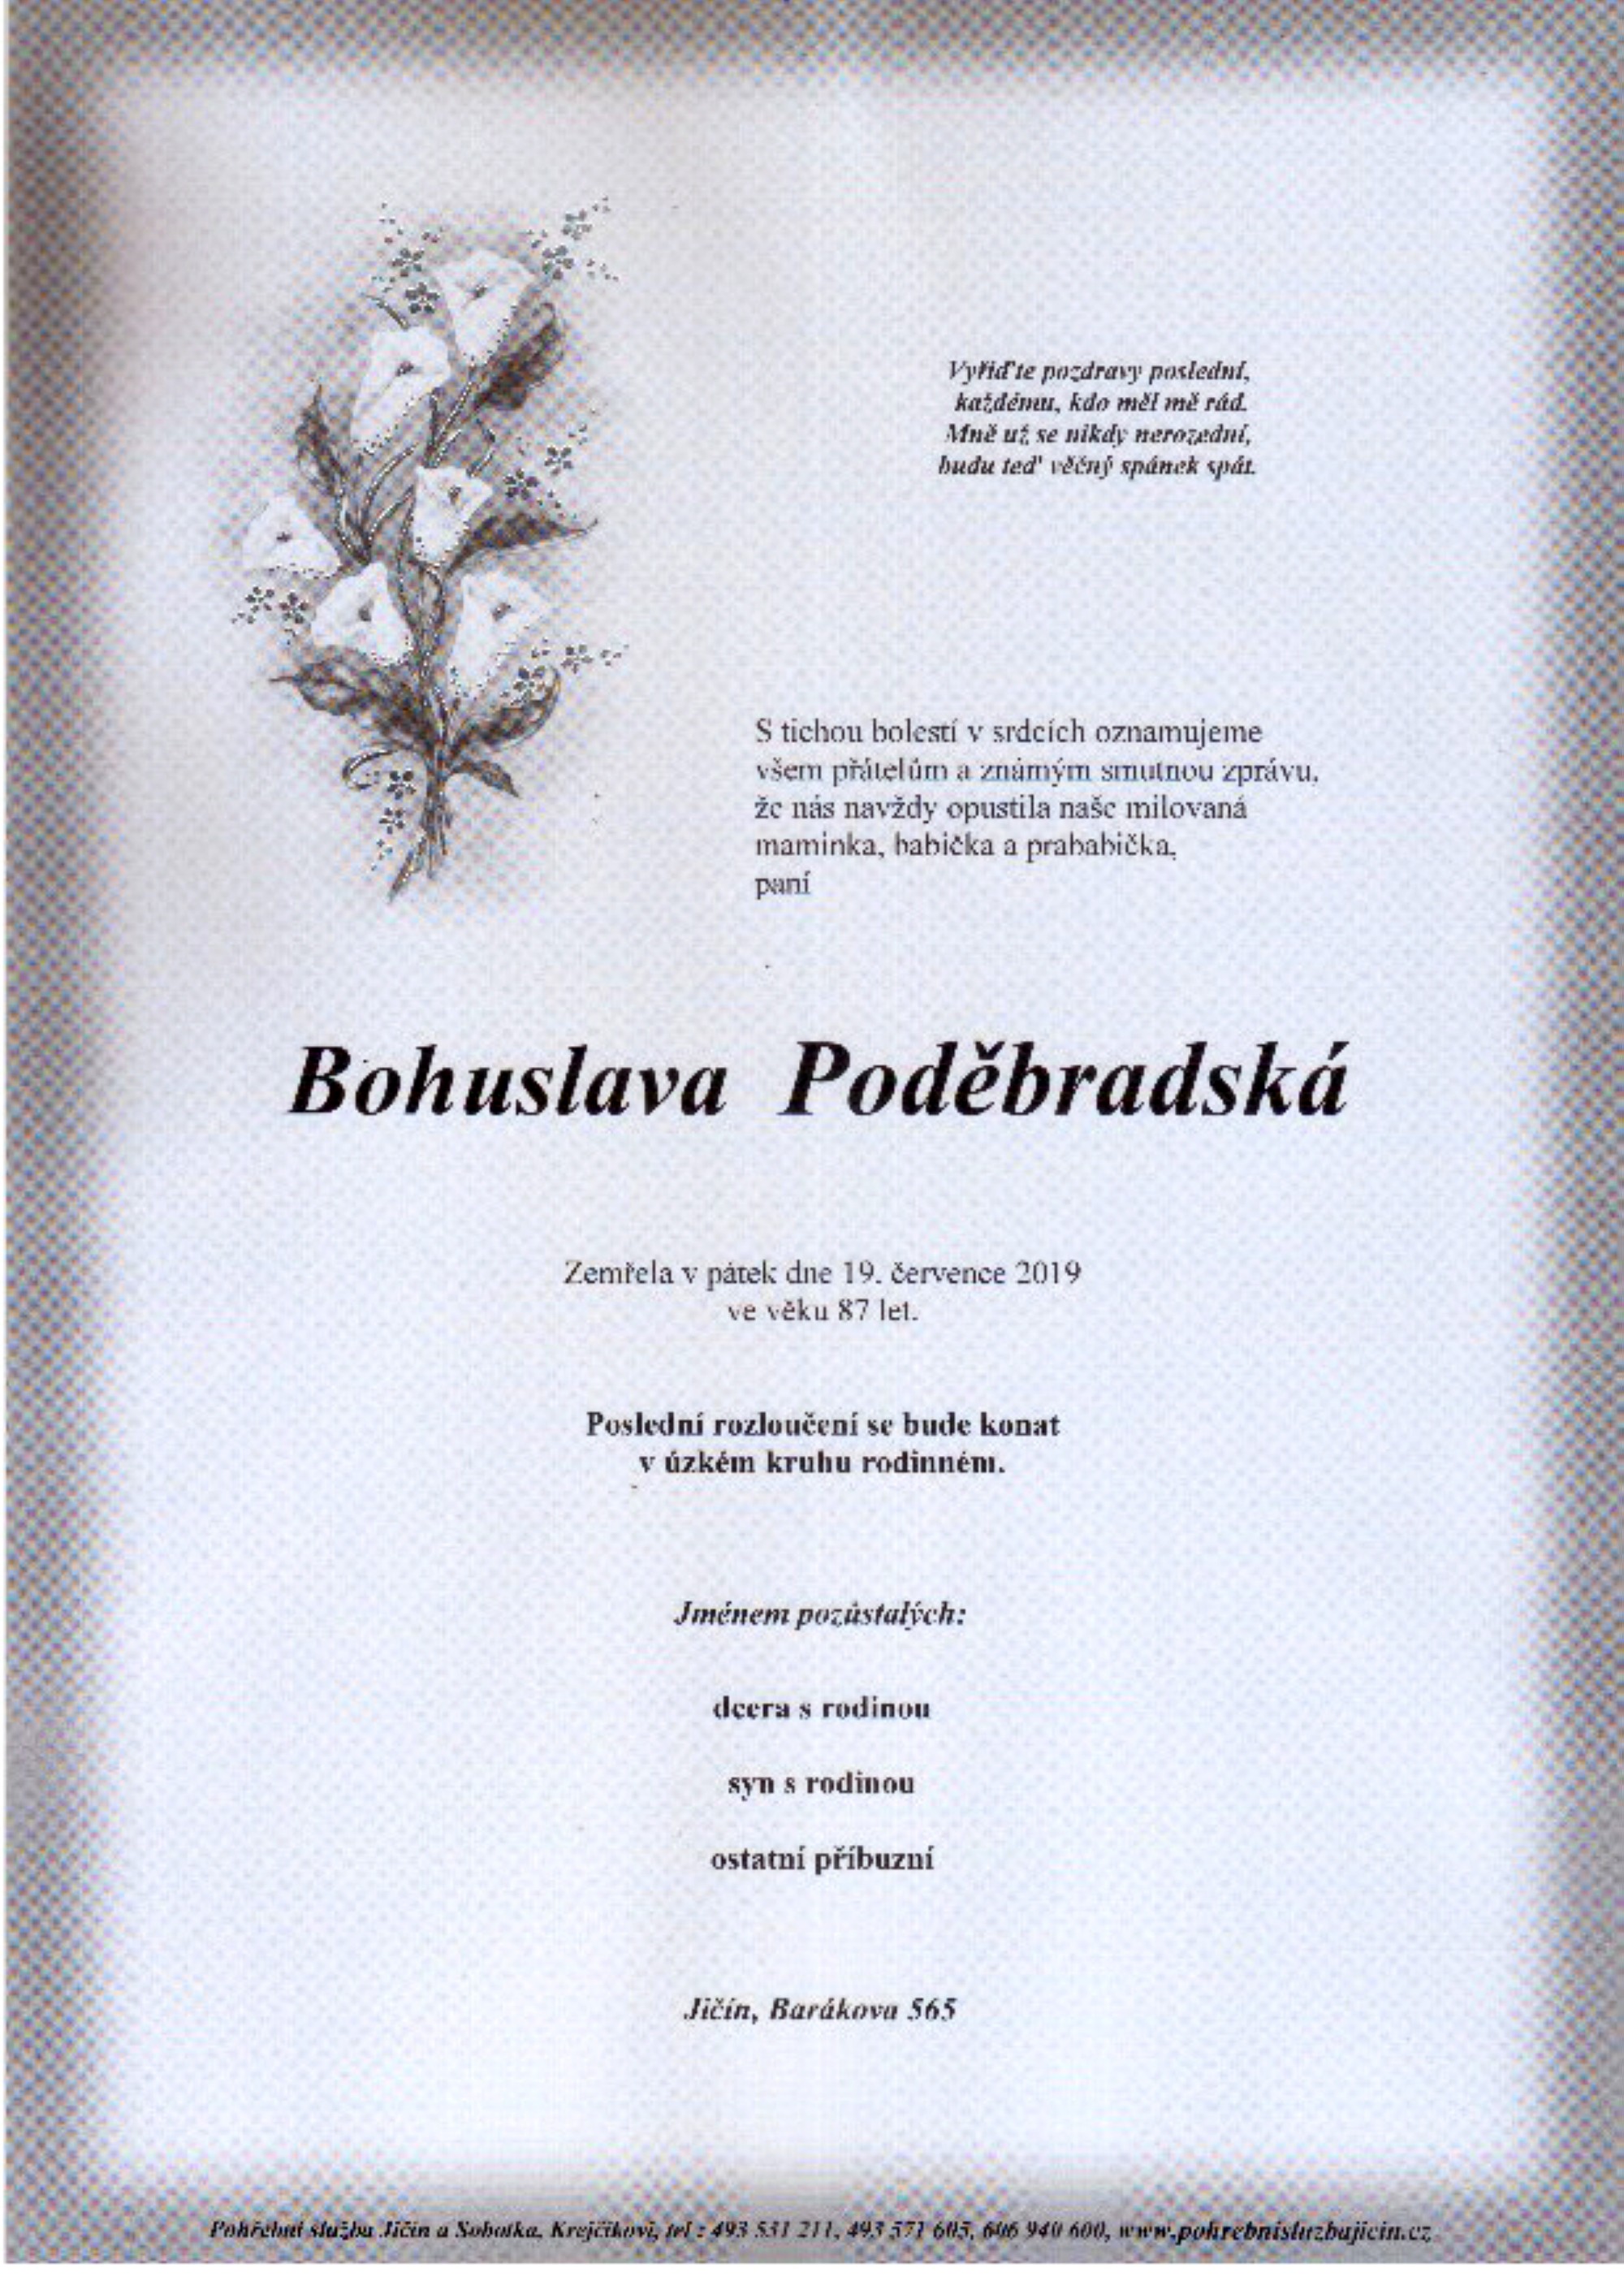 Bohuslava Poděbradská